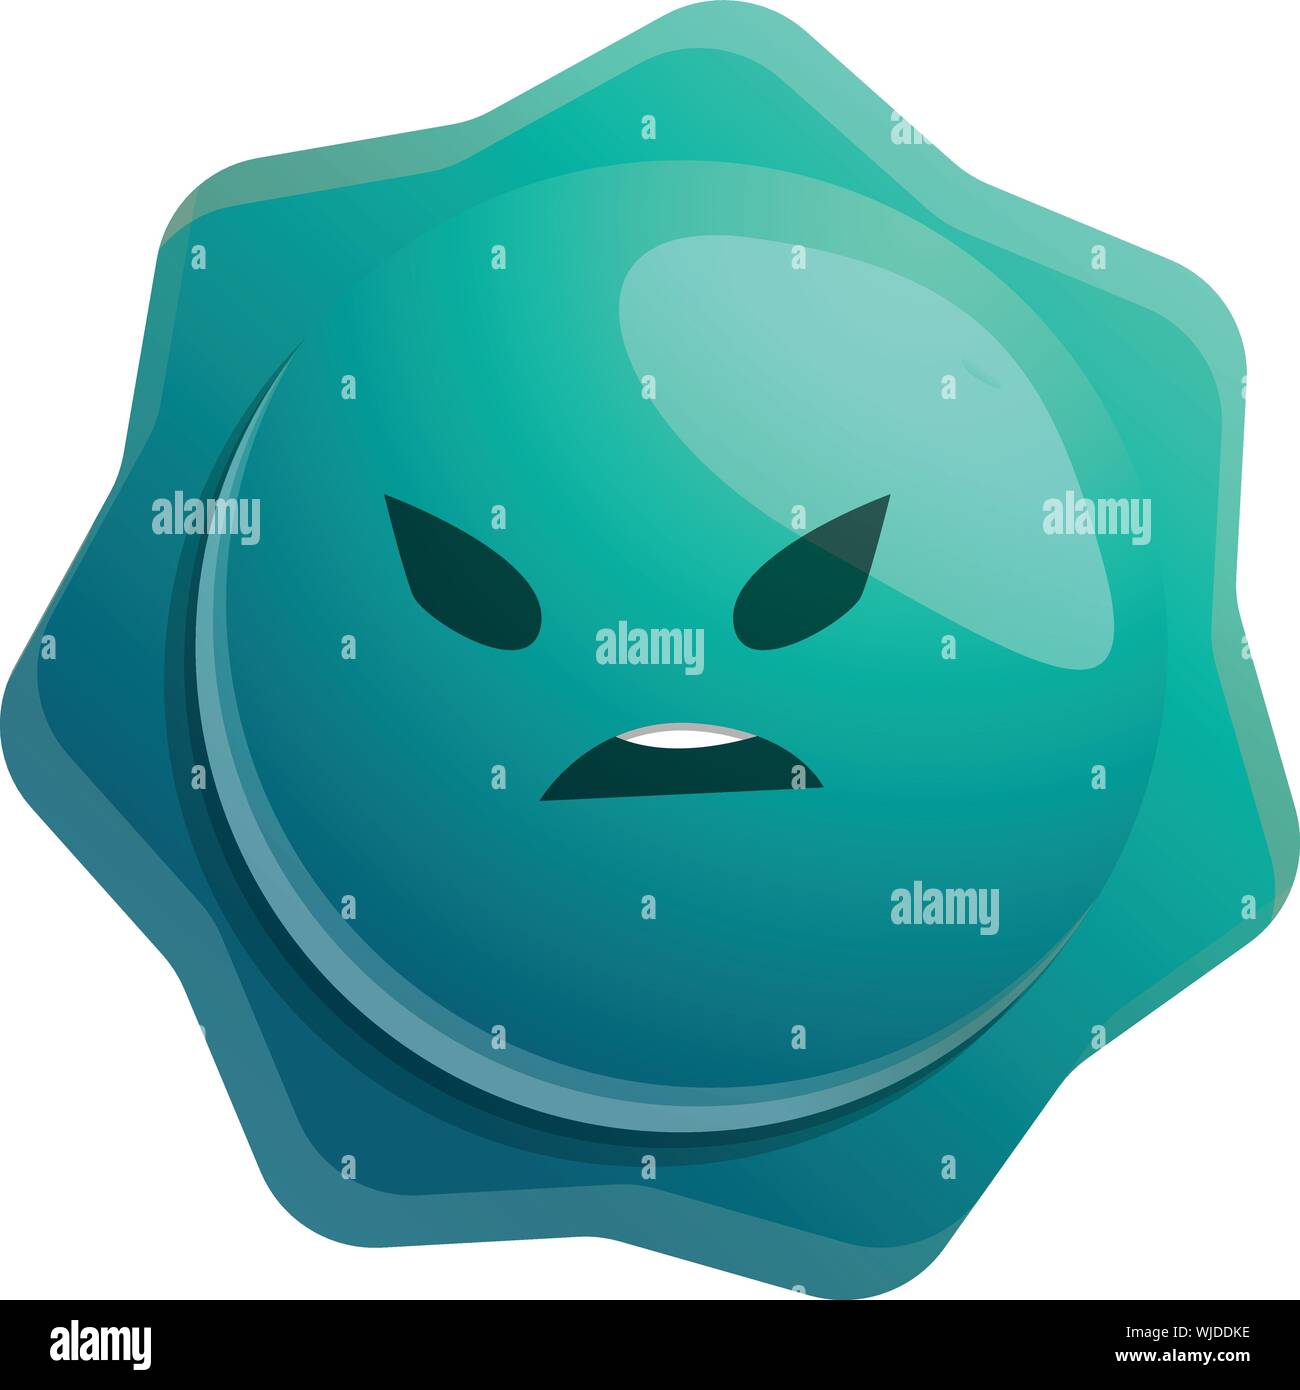 L'icône de germe de star. Caricature de star icône vecteur de germes pour la conception web isolé sur fond blanc Illustration de Vecteur